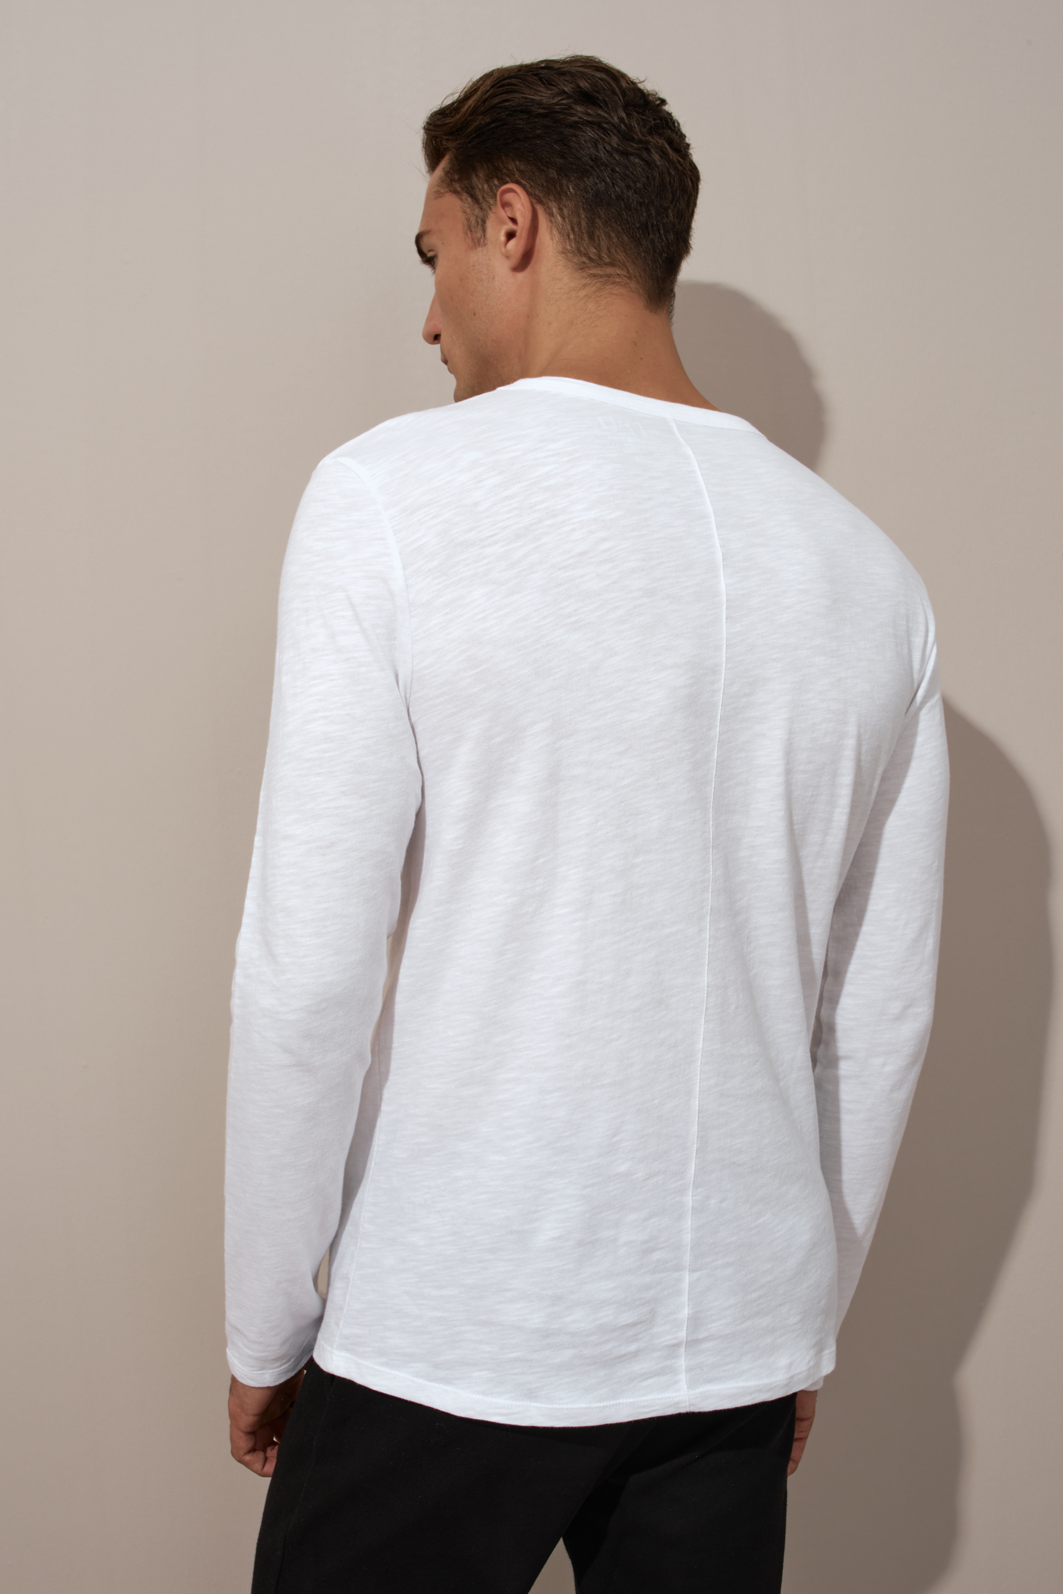 Flamlı Cotton Uzun Kollu Unisex T-shirt